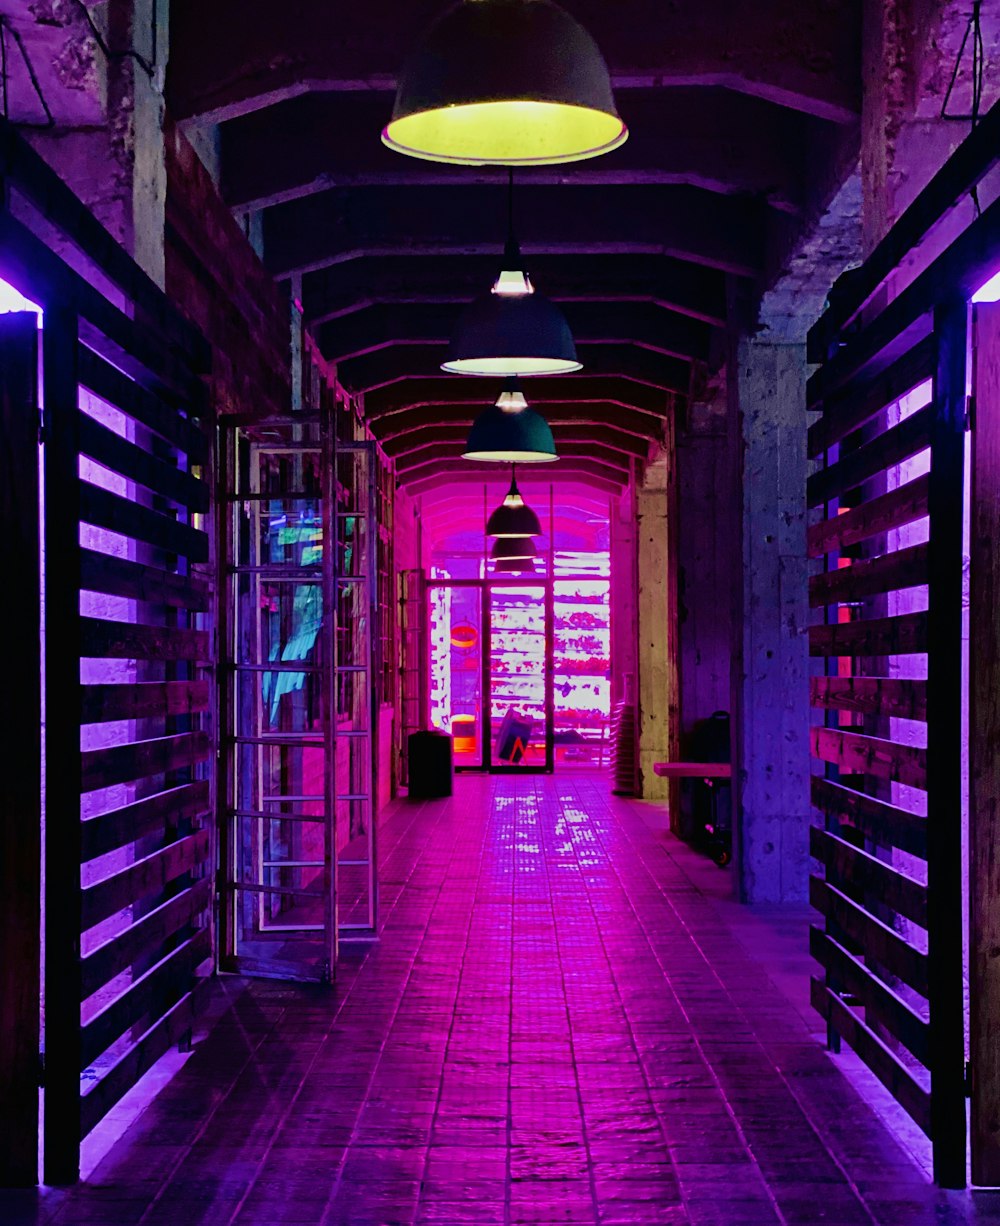 couloir avec lumière allumée pendant la nuit